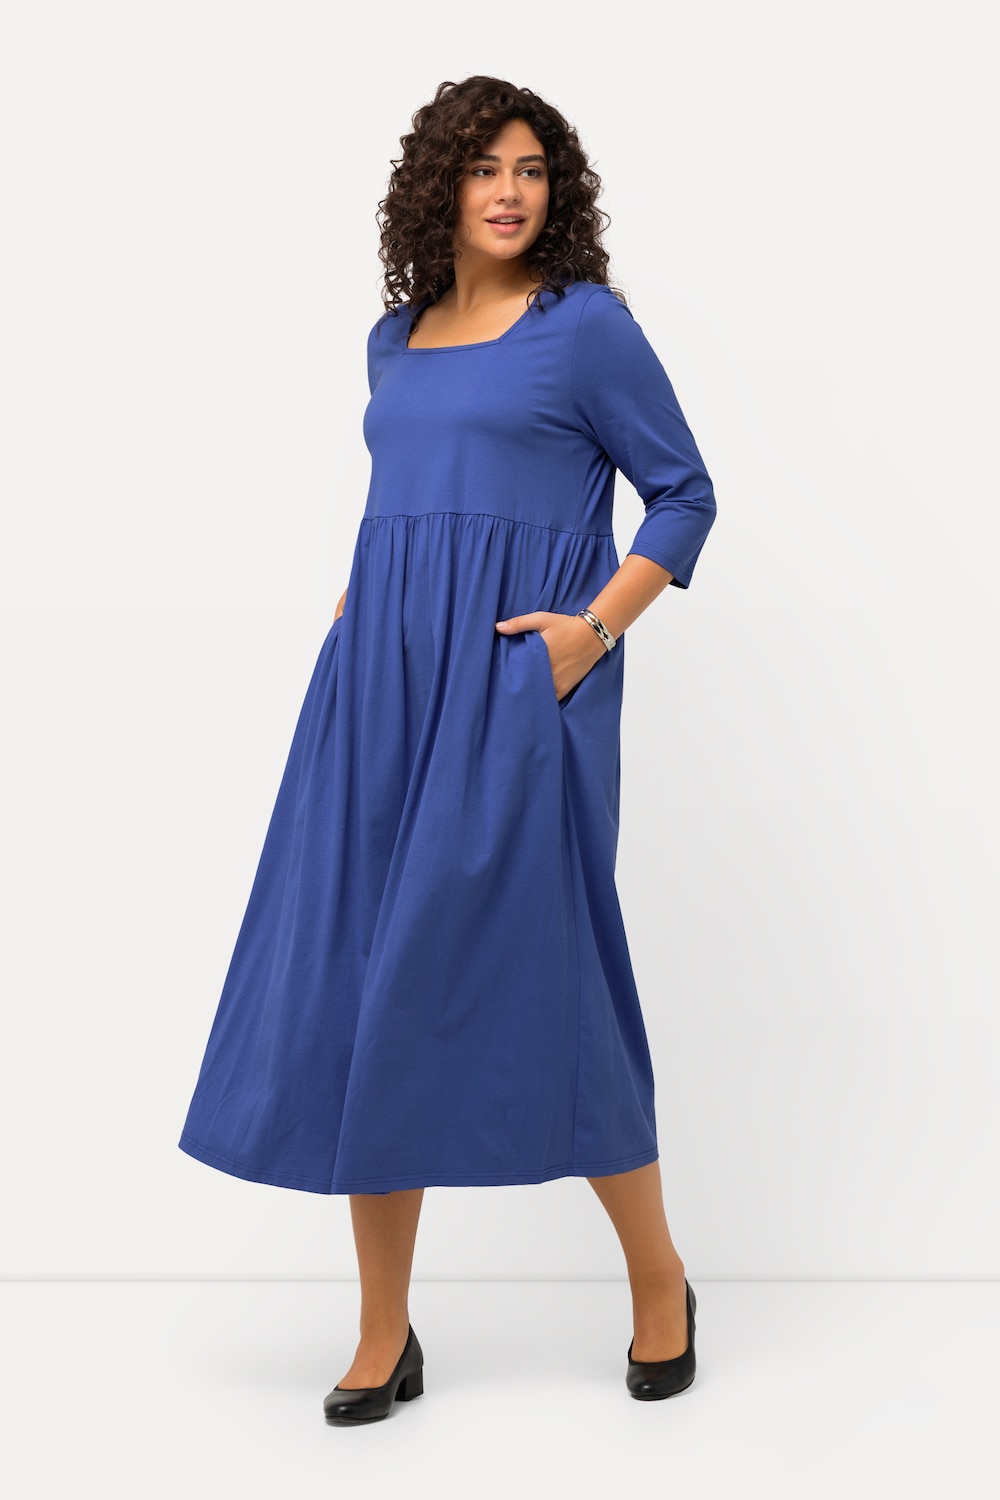 Grote Maten Jersey jurk, Dames, blauw, Maat: 46/48, Katoen, Ulla Popken